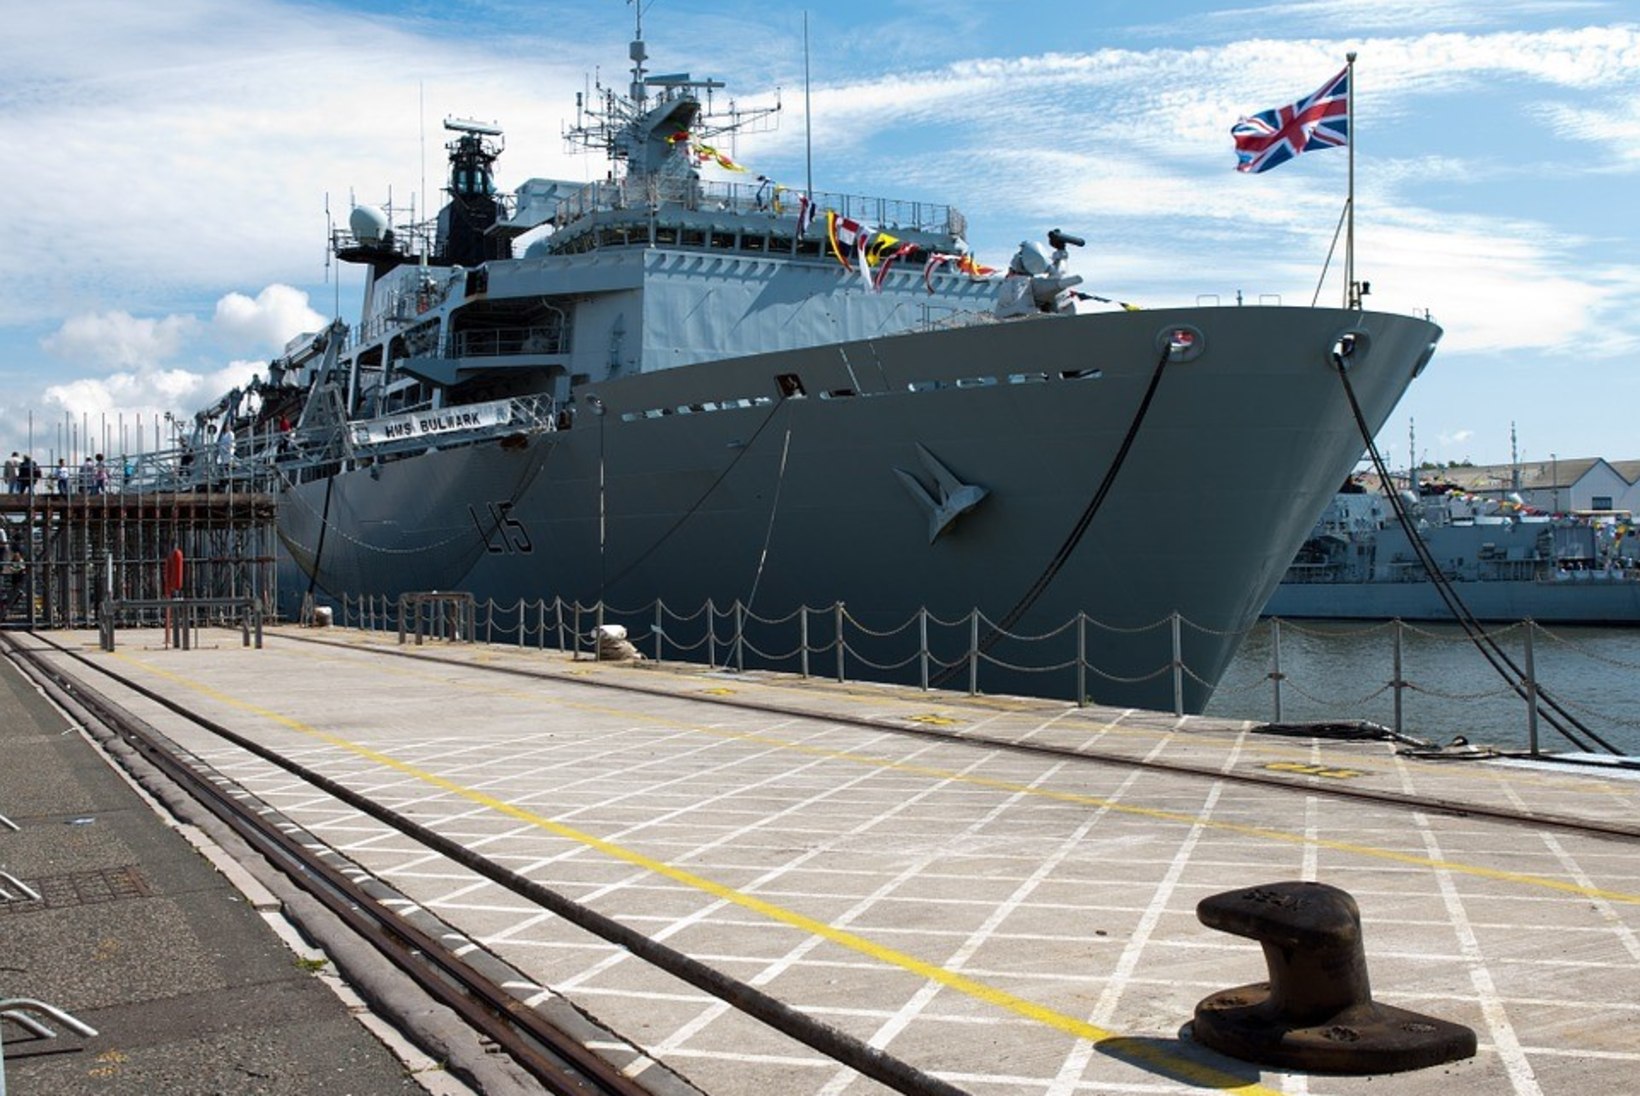 Ühendkuningriik toob kalavete kaitseks sõjalaevad